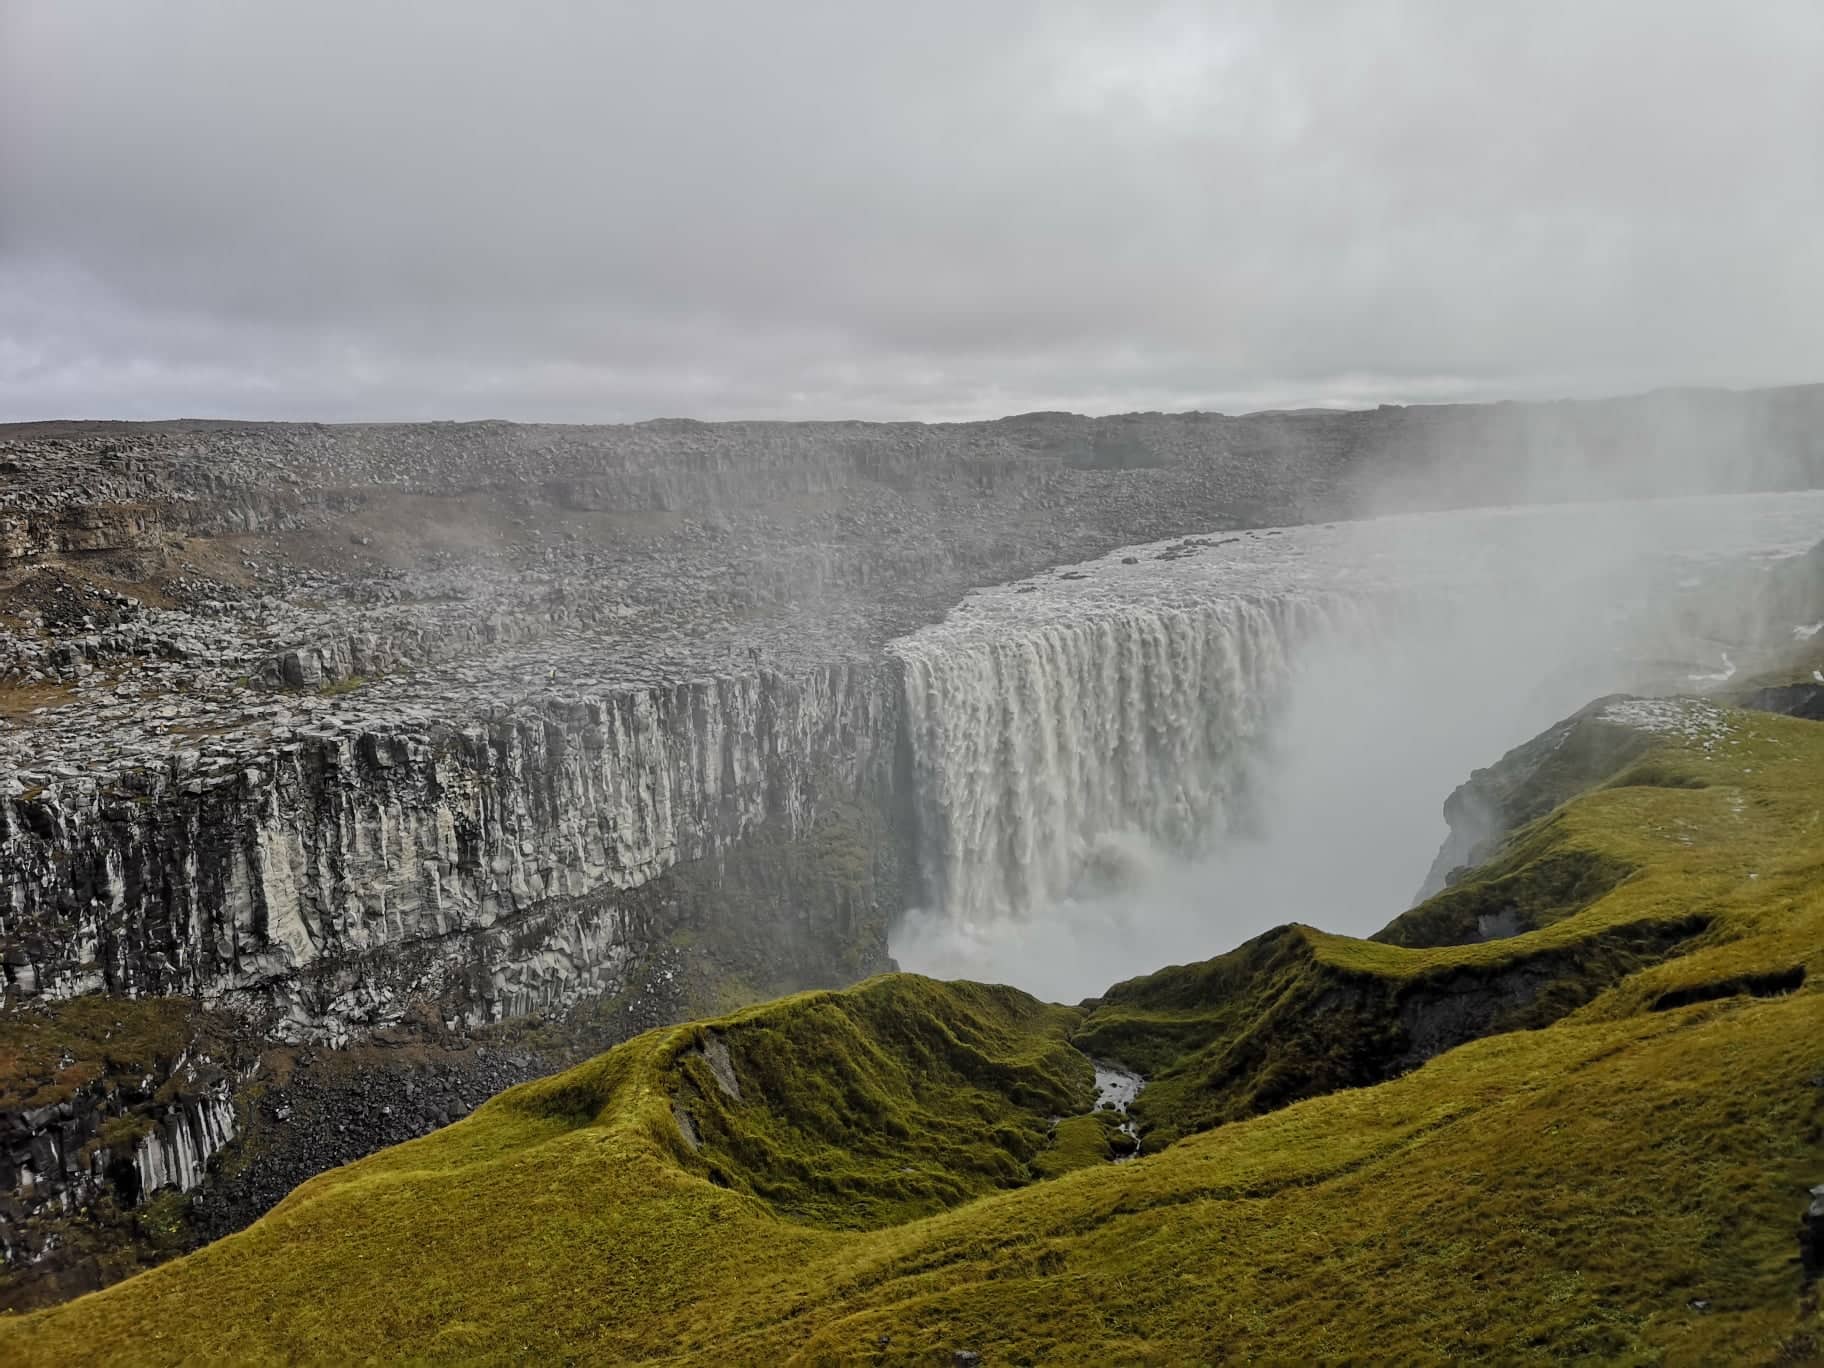 가이드와 함께하는 7일 링로드 탐험 | 아이슬란드 링로드 일주